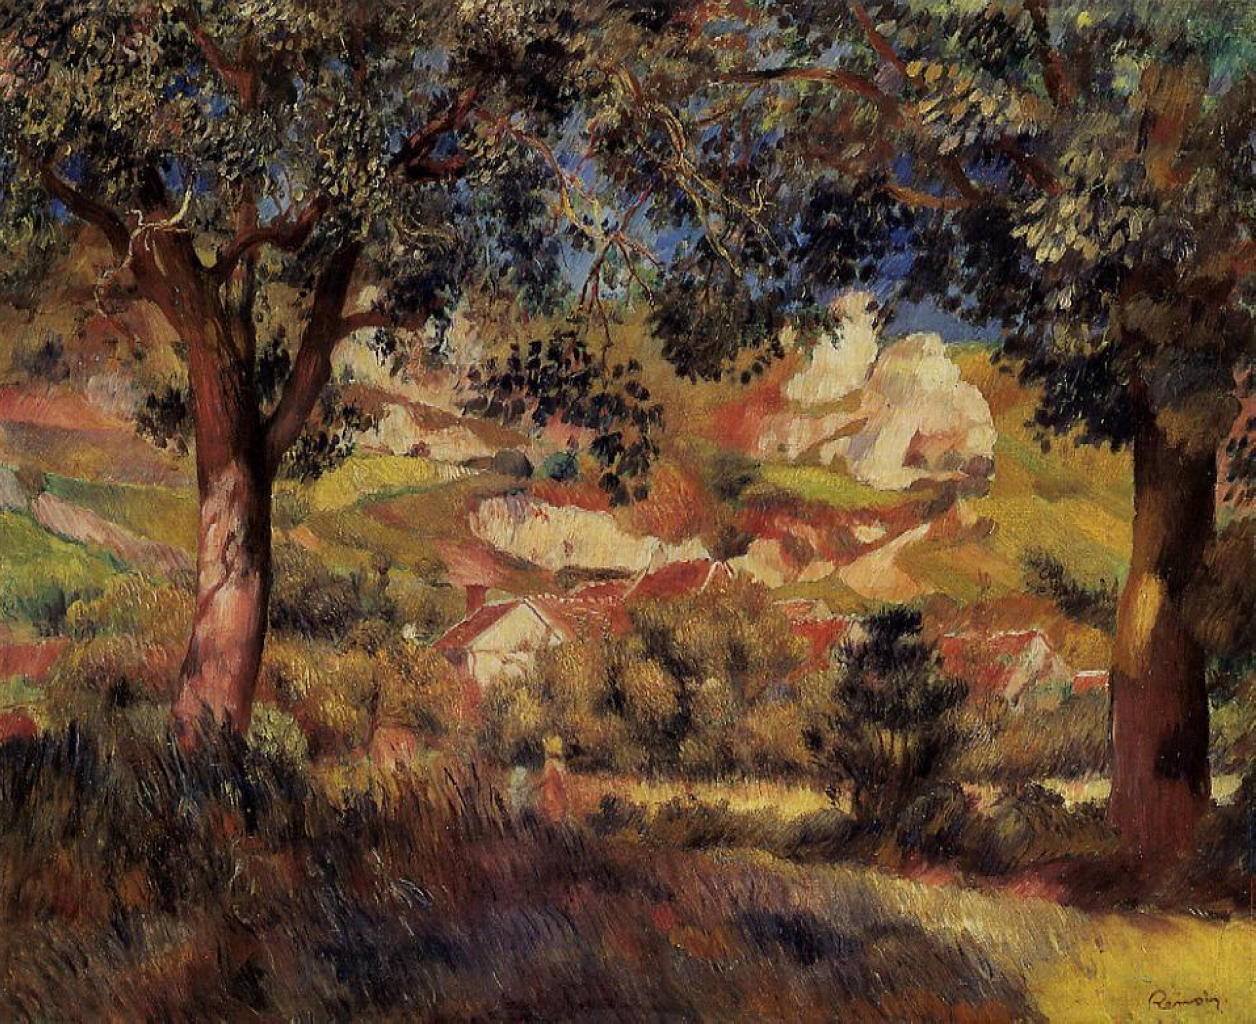 Pierre+Auguste+Renoir-1841-1-19 (533).jpg